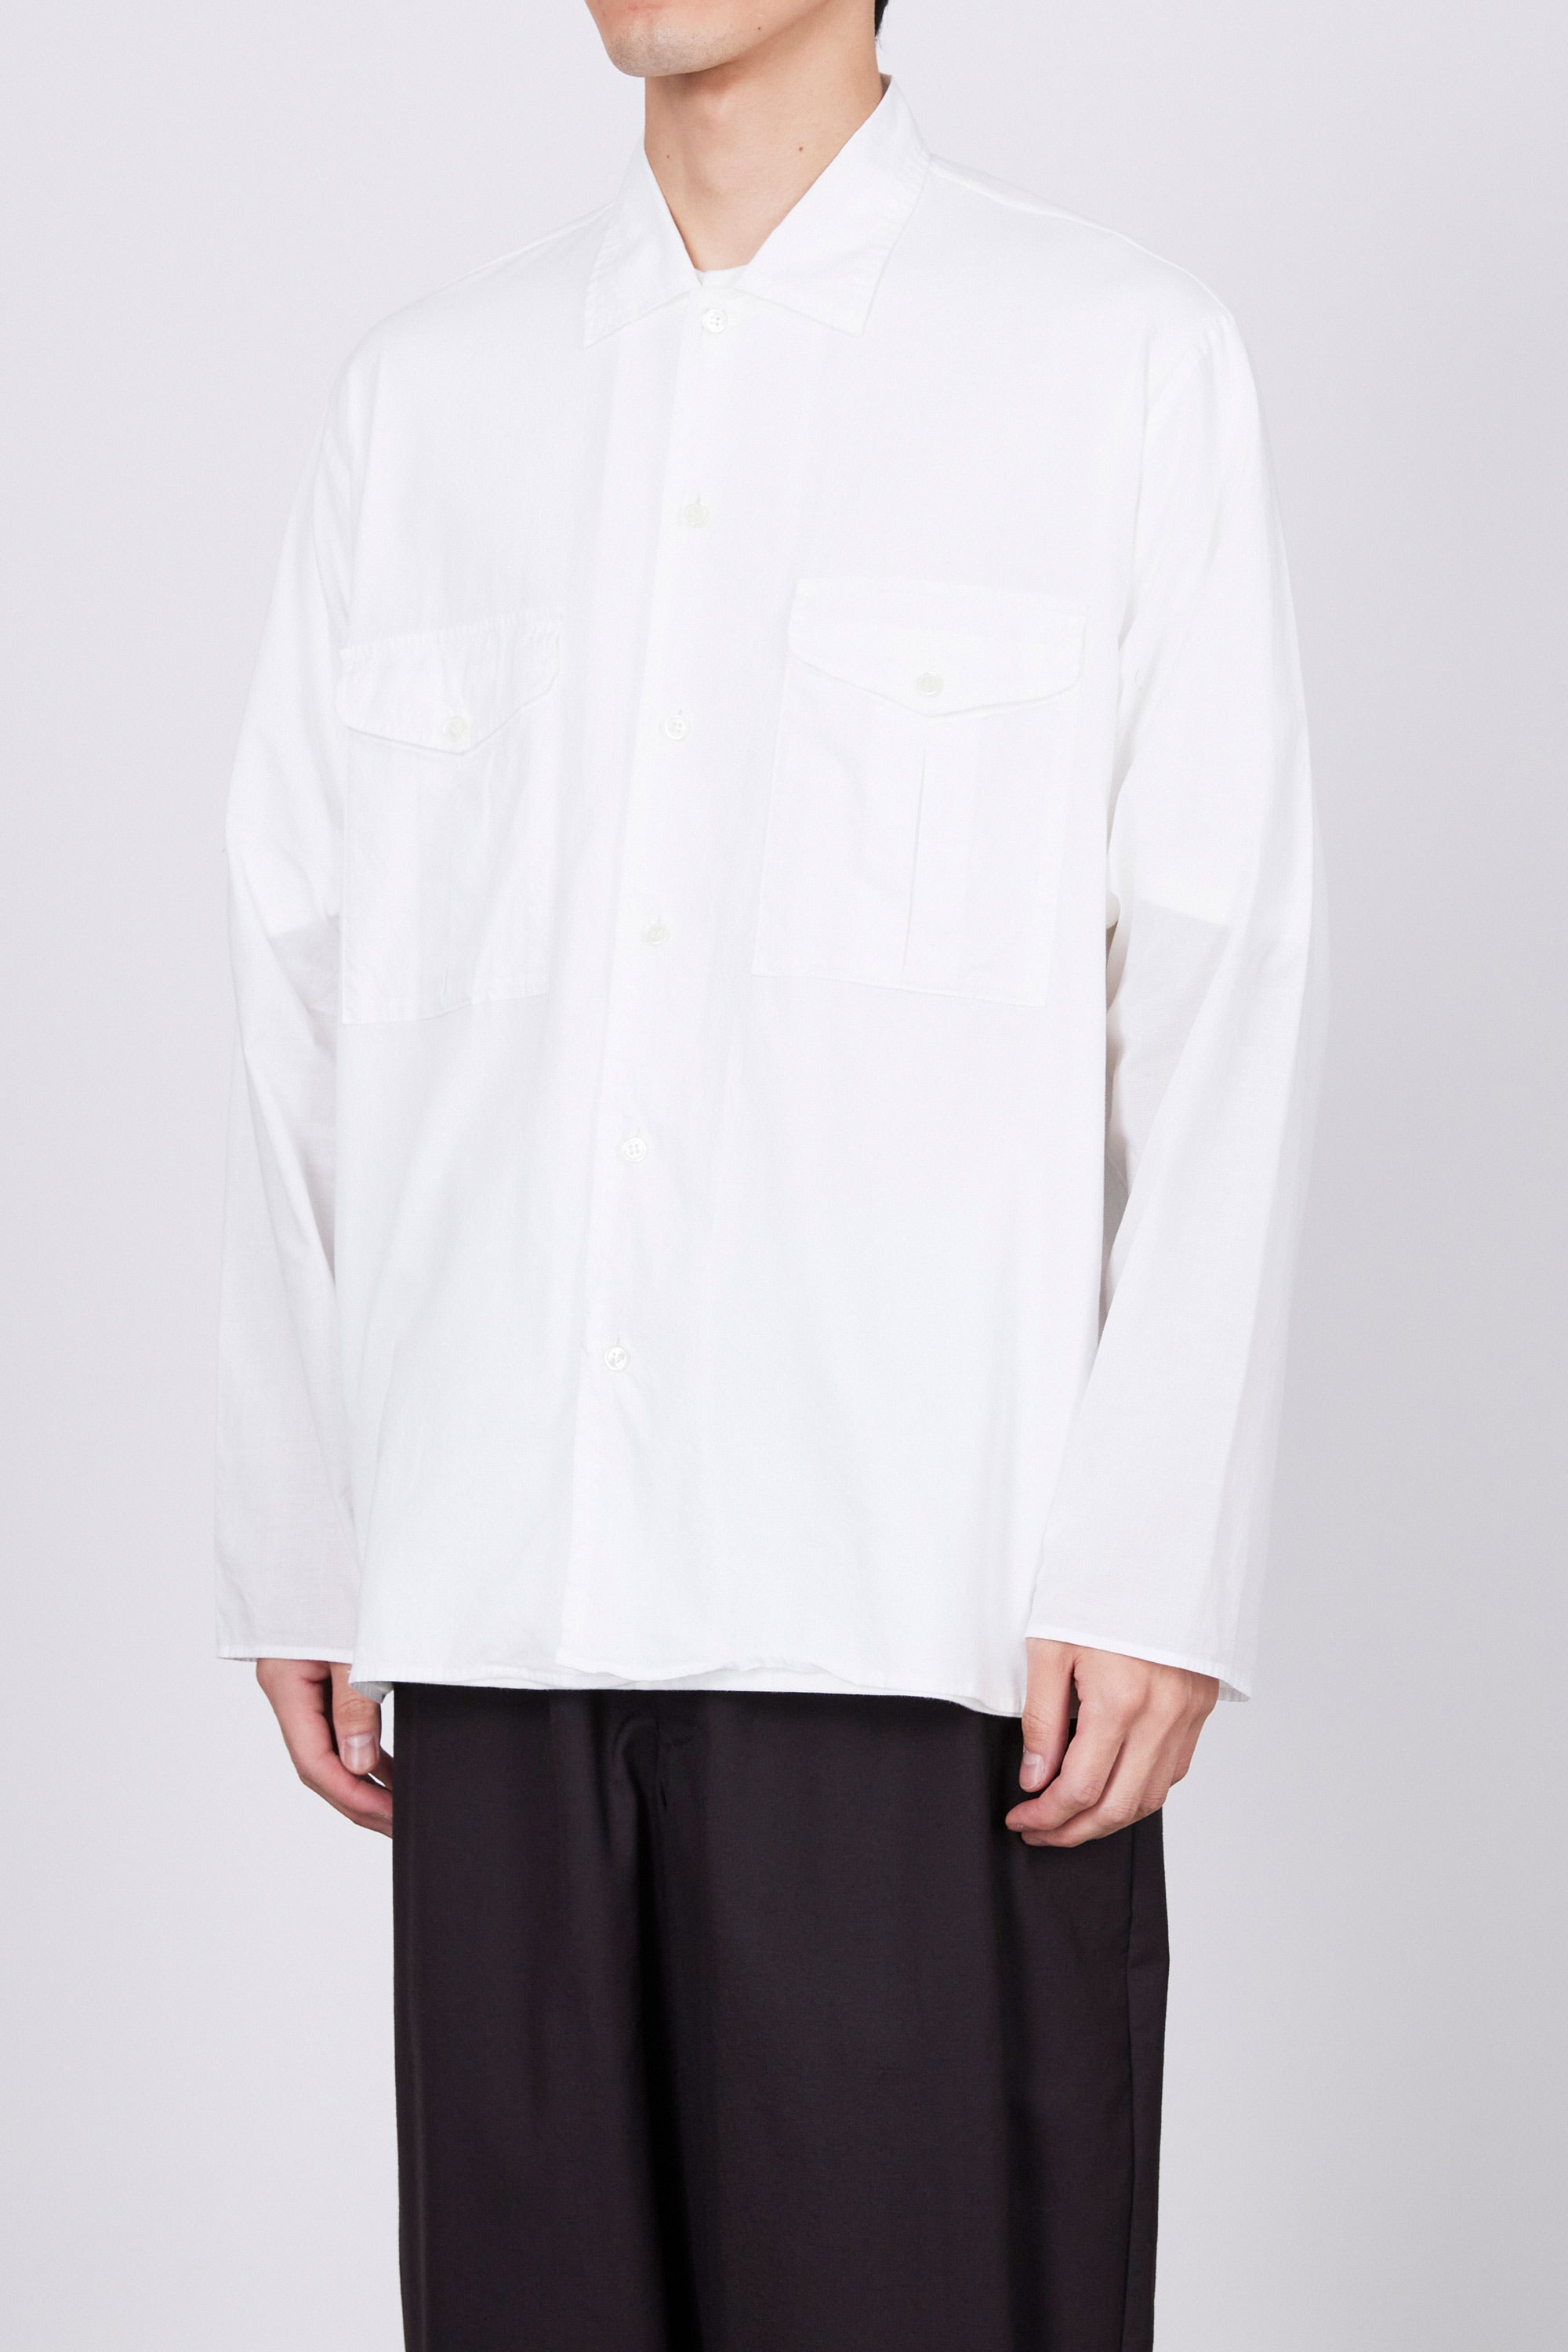 オーガニックコットンコードローン / オフィサーシャツ, White